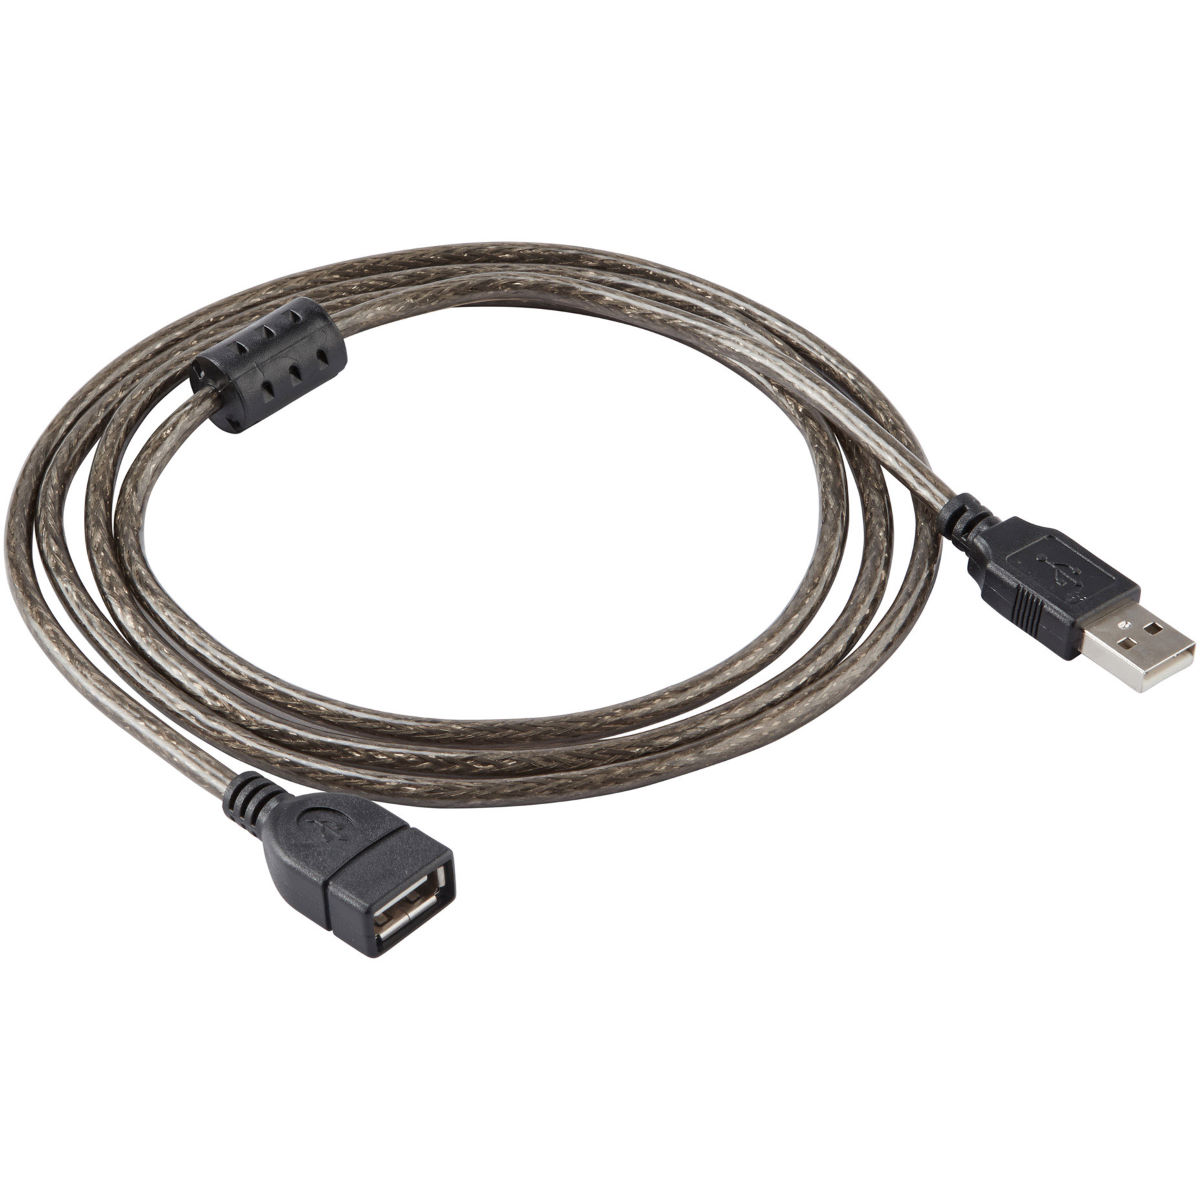 Cable de extensión USB LifeLine (1,5 m) - Accesorios para ciclocomputadores